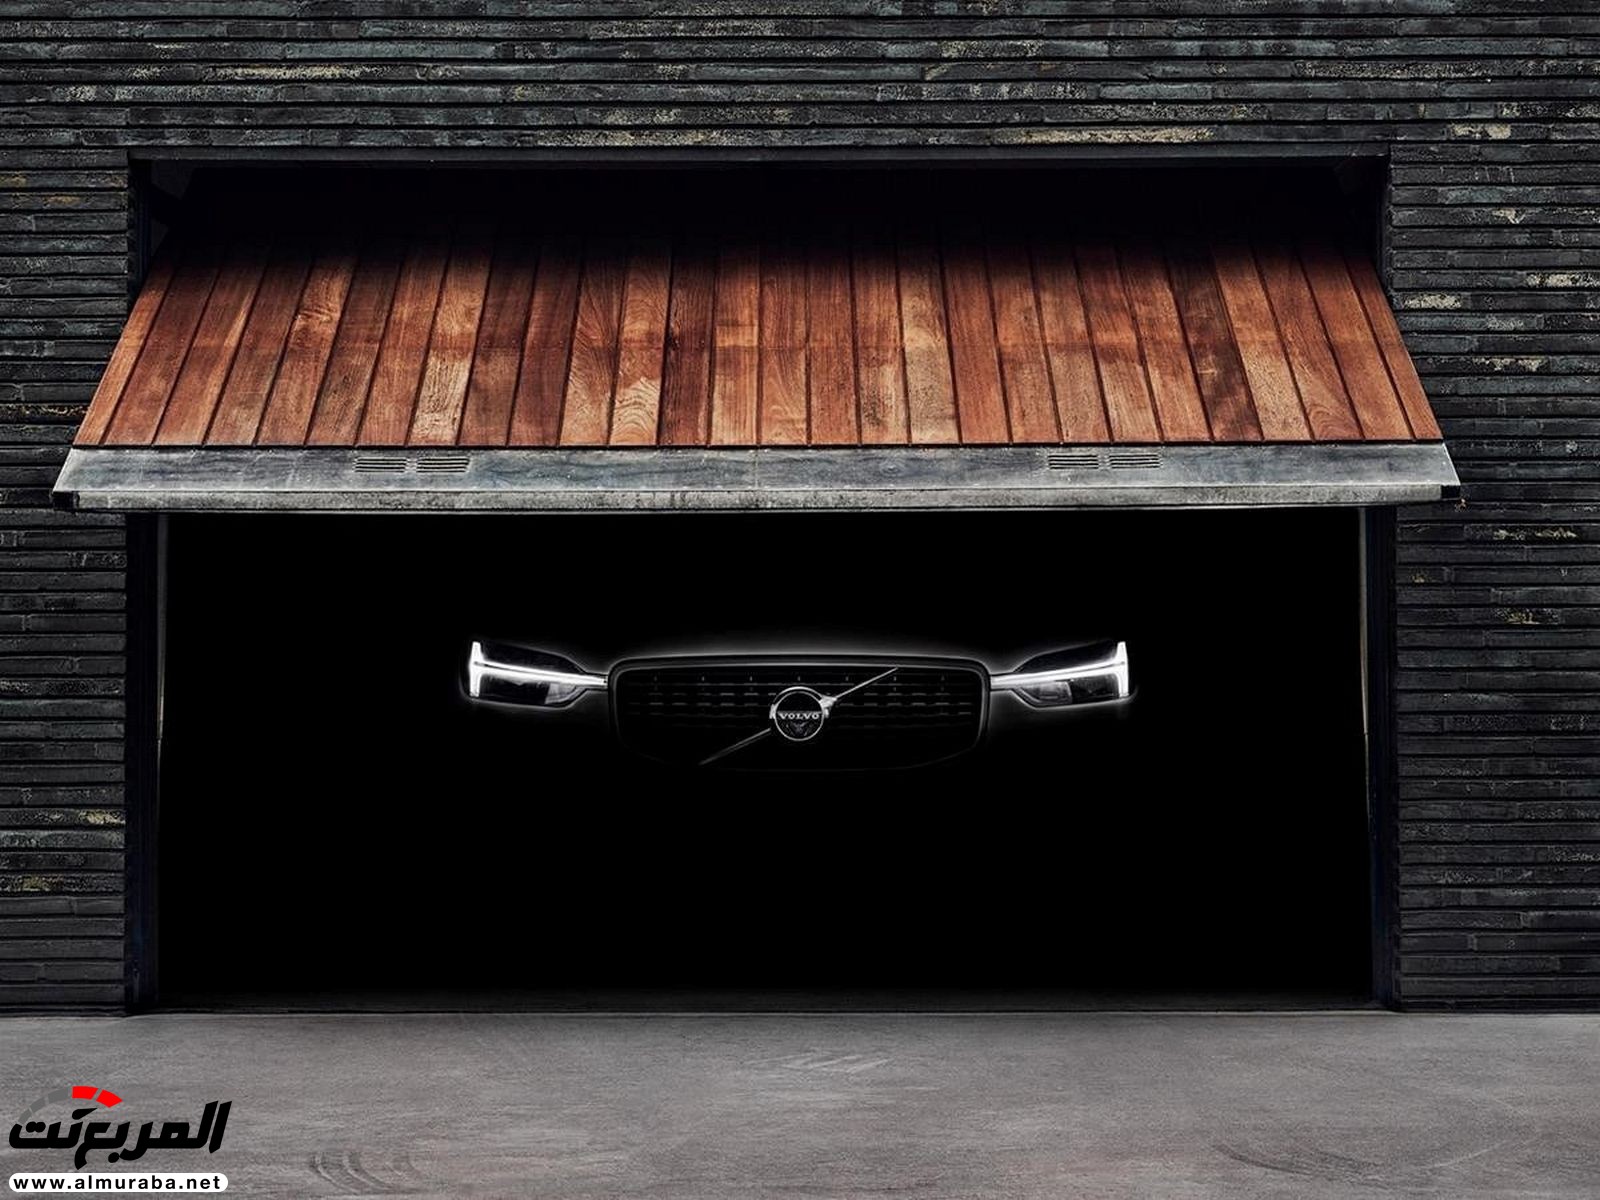 "فولفو" XC60 الجديدة كليا 2018 قادرة على توجيه نفسها لإبعادك عن الحوادث المحتملة Volvo 29